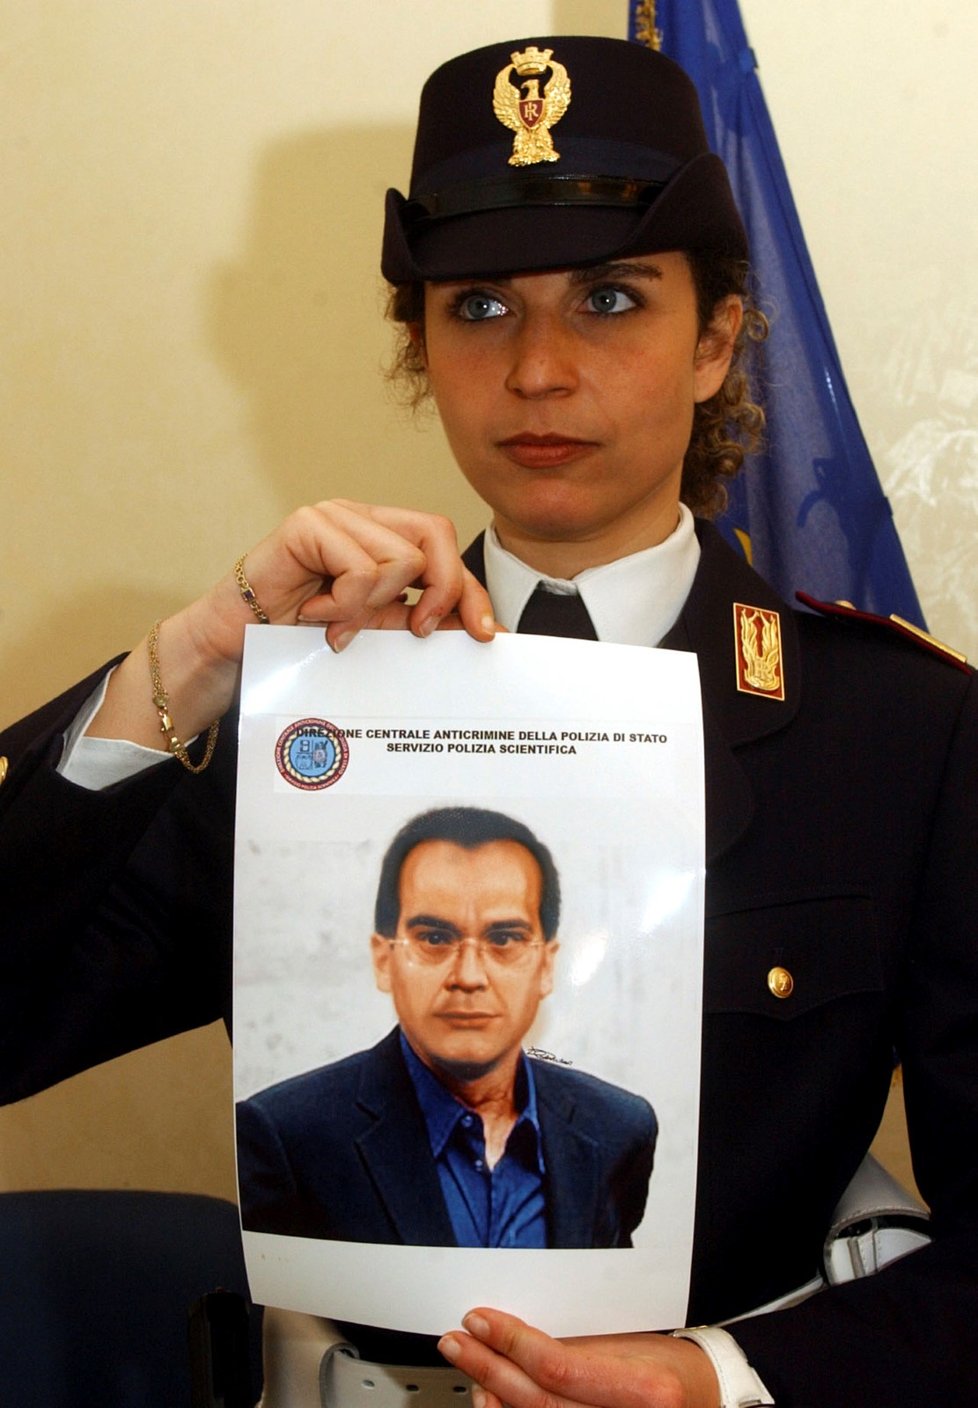 Italská policistka představuje identikit (pravděpodobnou podobu) mafiána  Mattea Messiny Denara